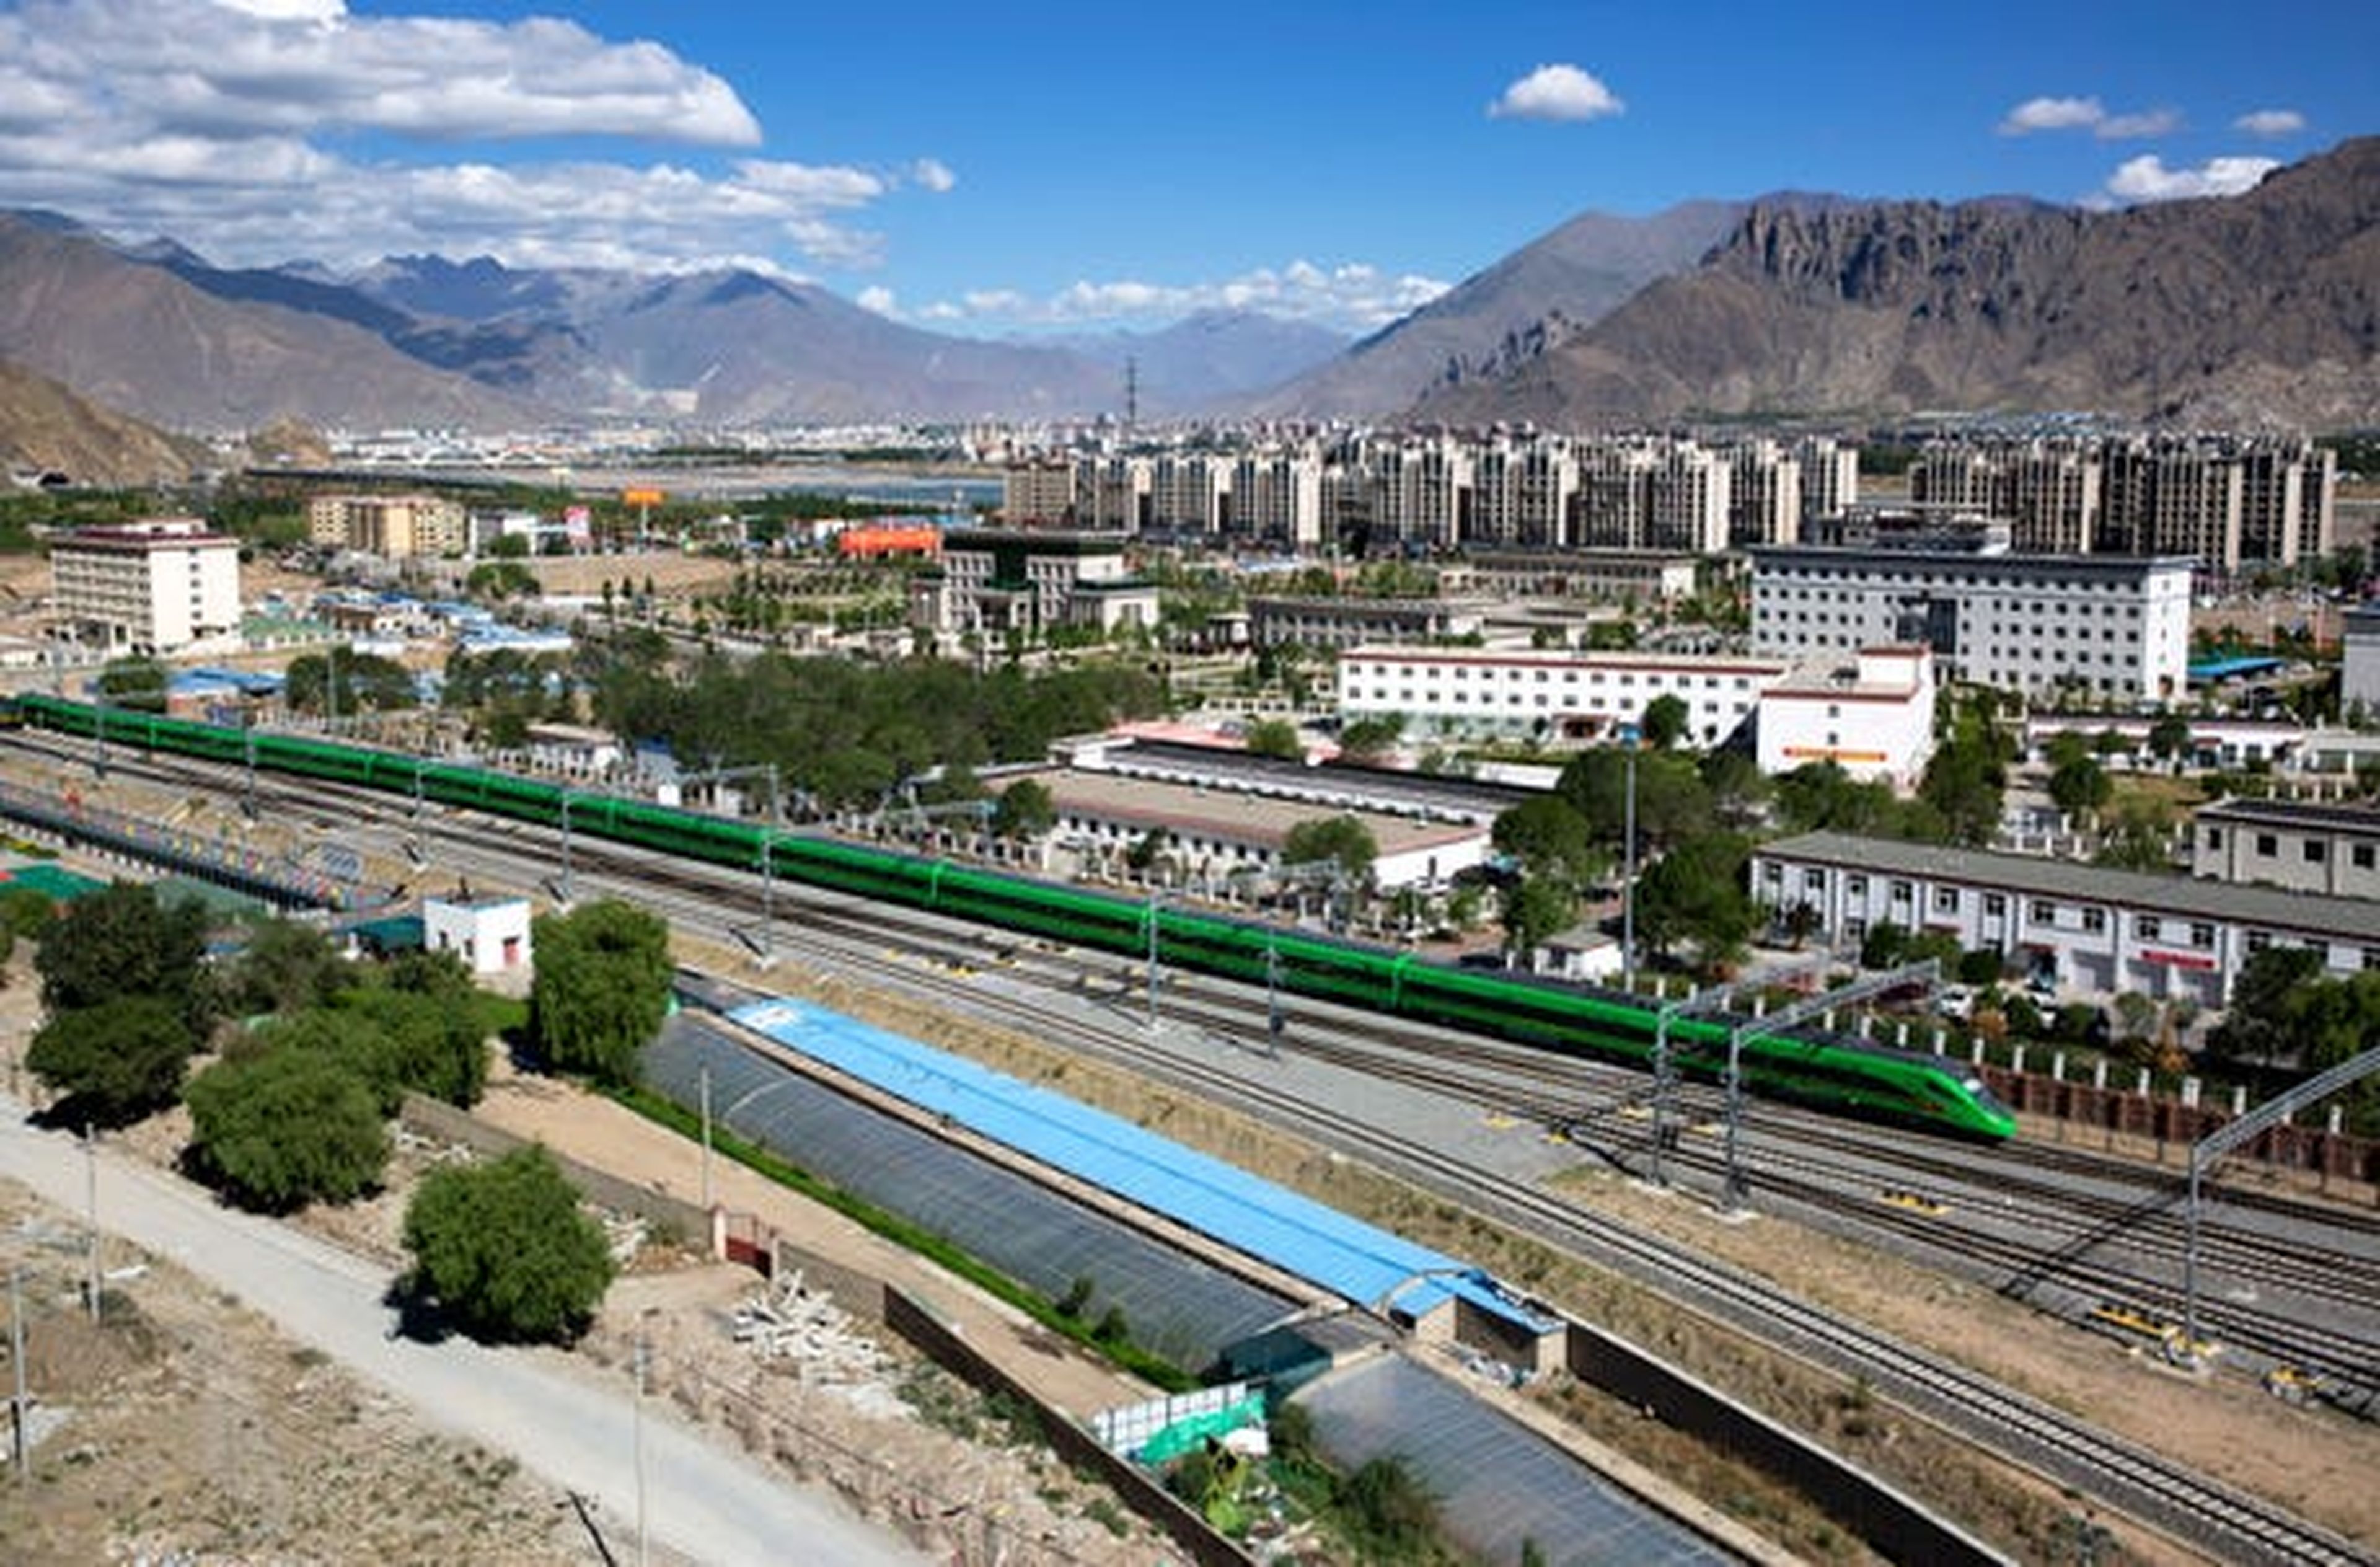 El primer tren bala Fuxing sale de la estación de tren de Lhasa.